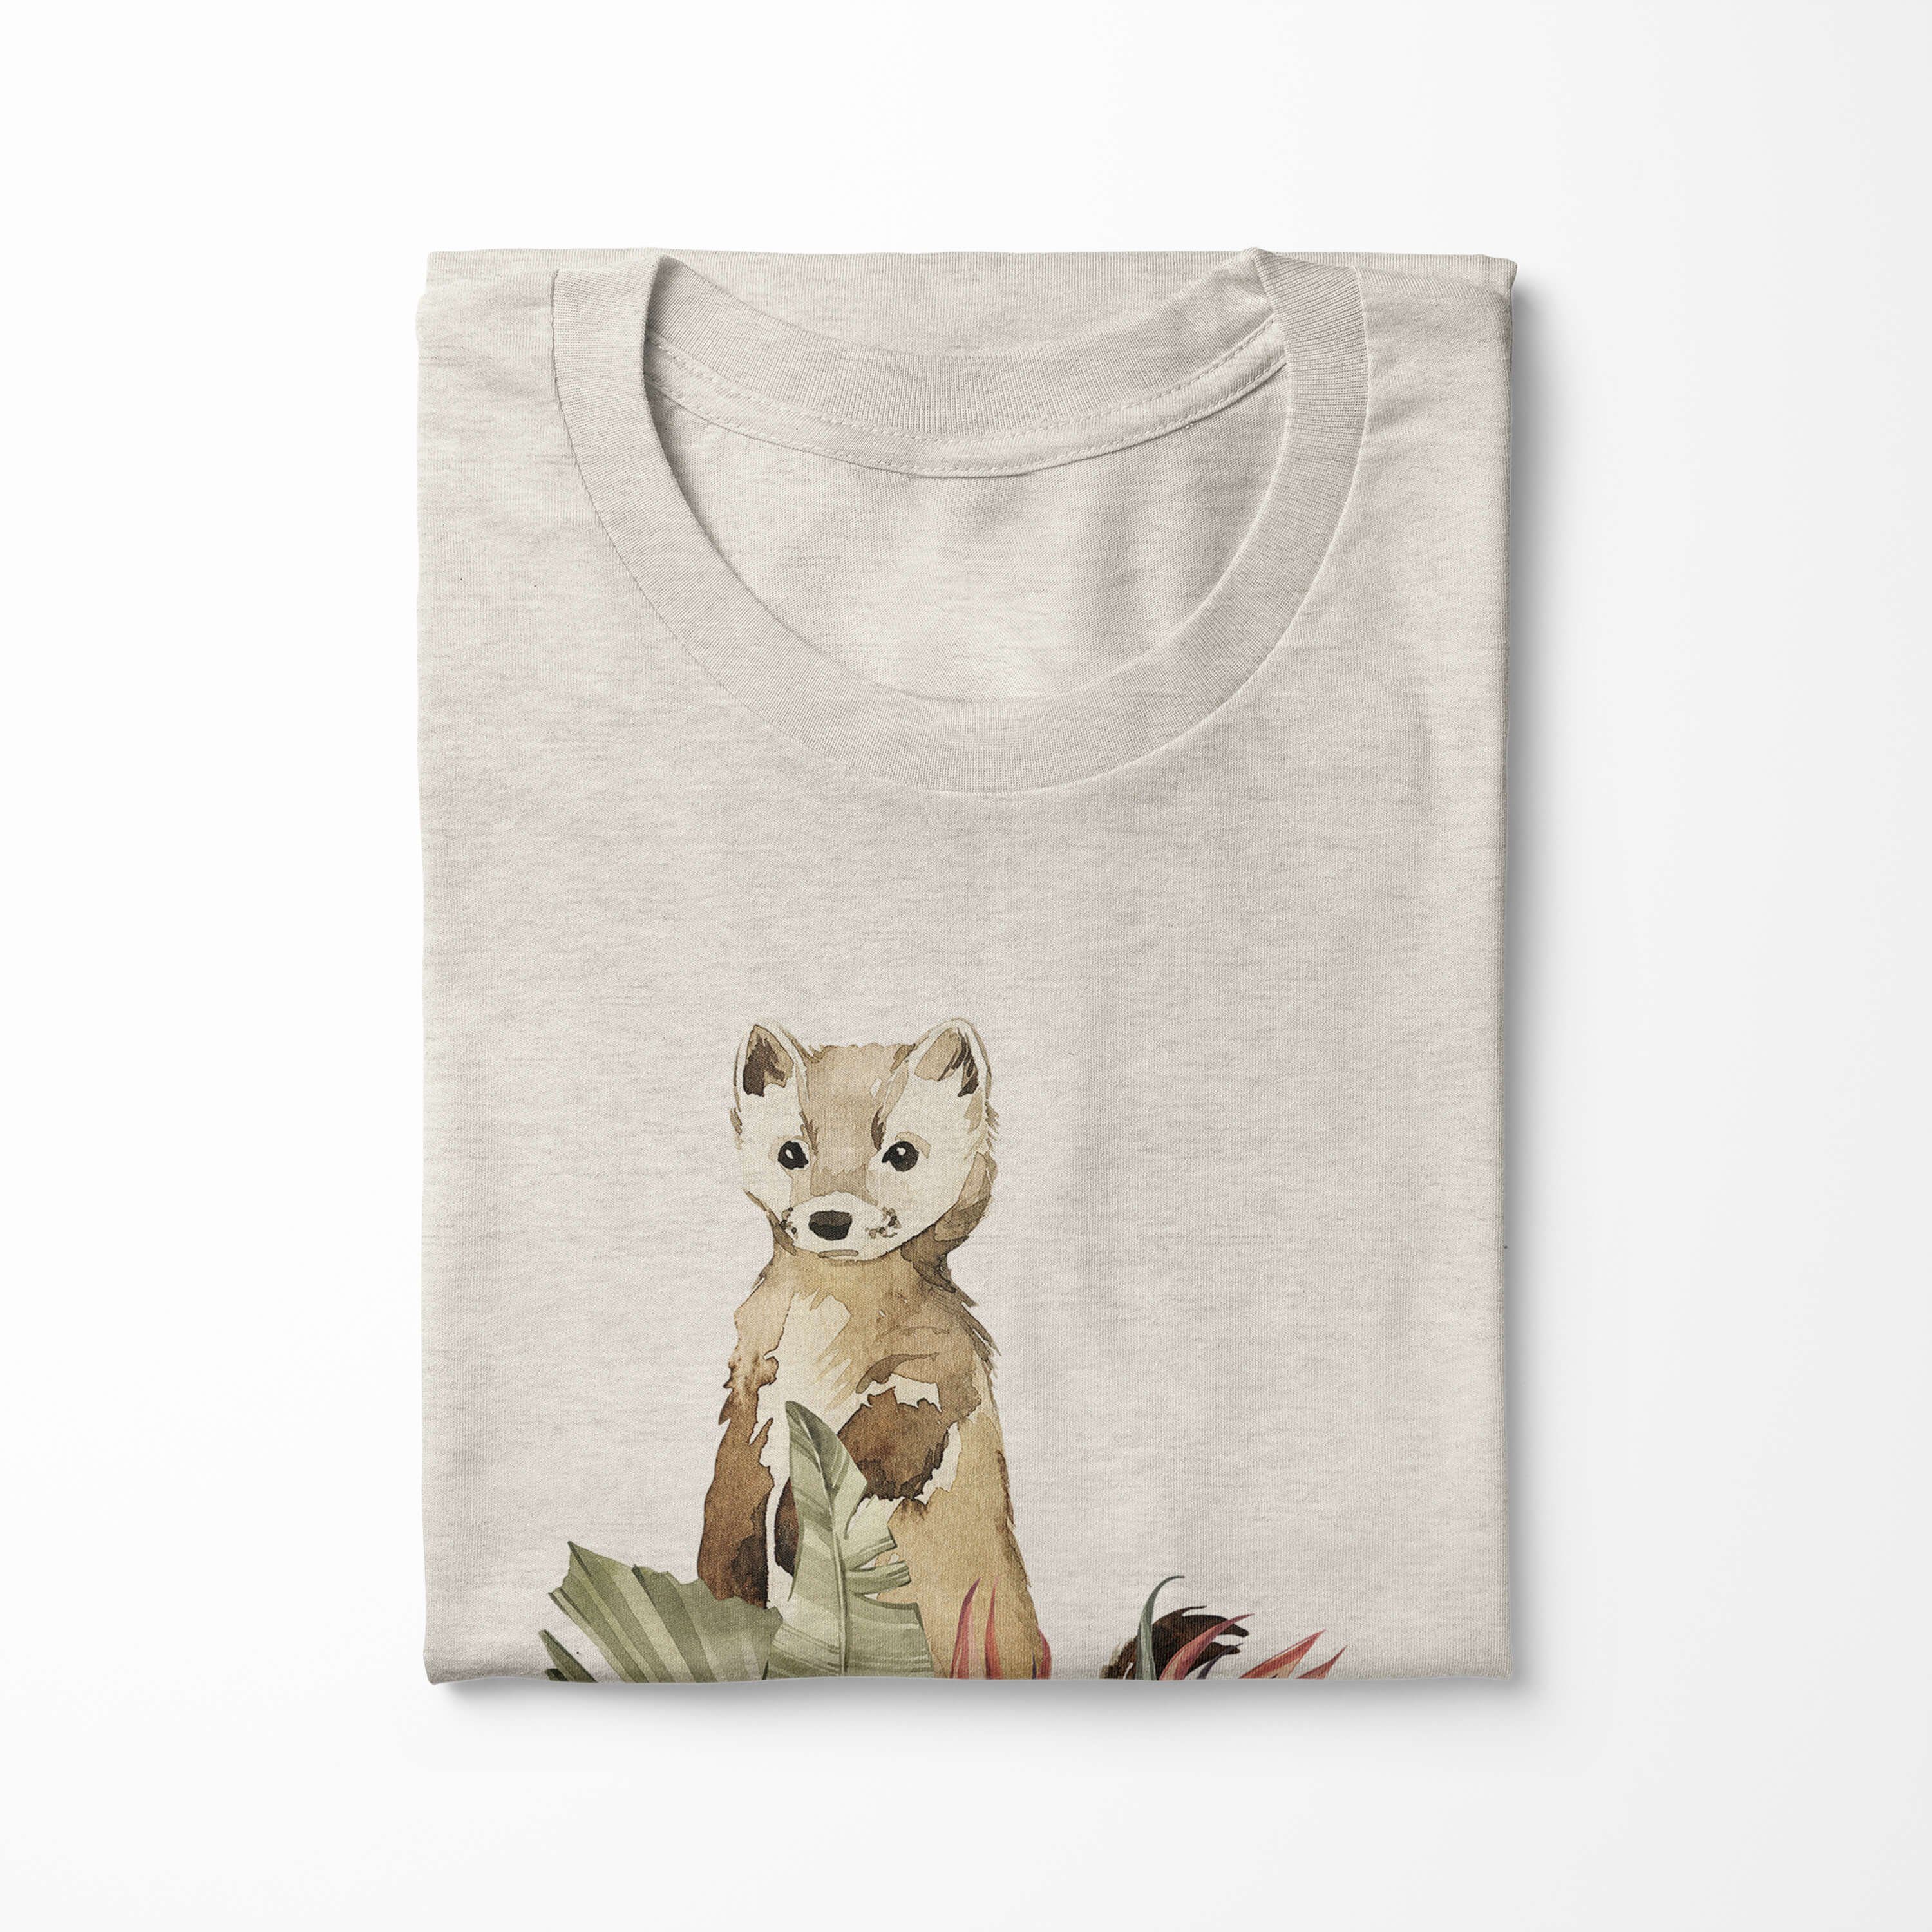 gekämmte Sinus Bio-Baumwolle (1-tlg) Shirt Blumen Nachhaltig T-Shirt Ökomode Aquarell Herren Motiv Wiesel T-Shirt au 100% Art